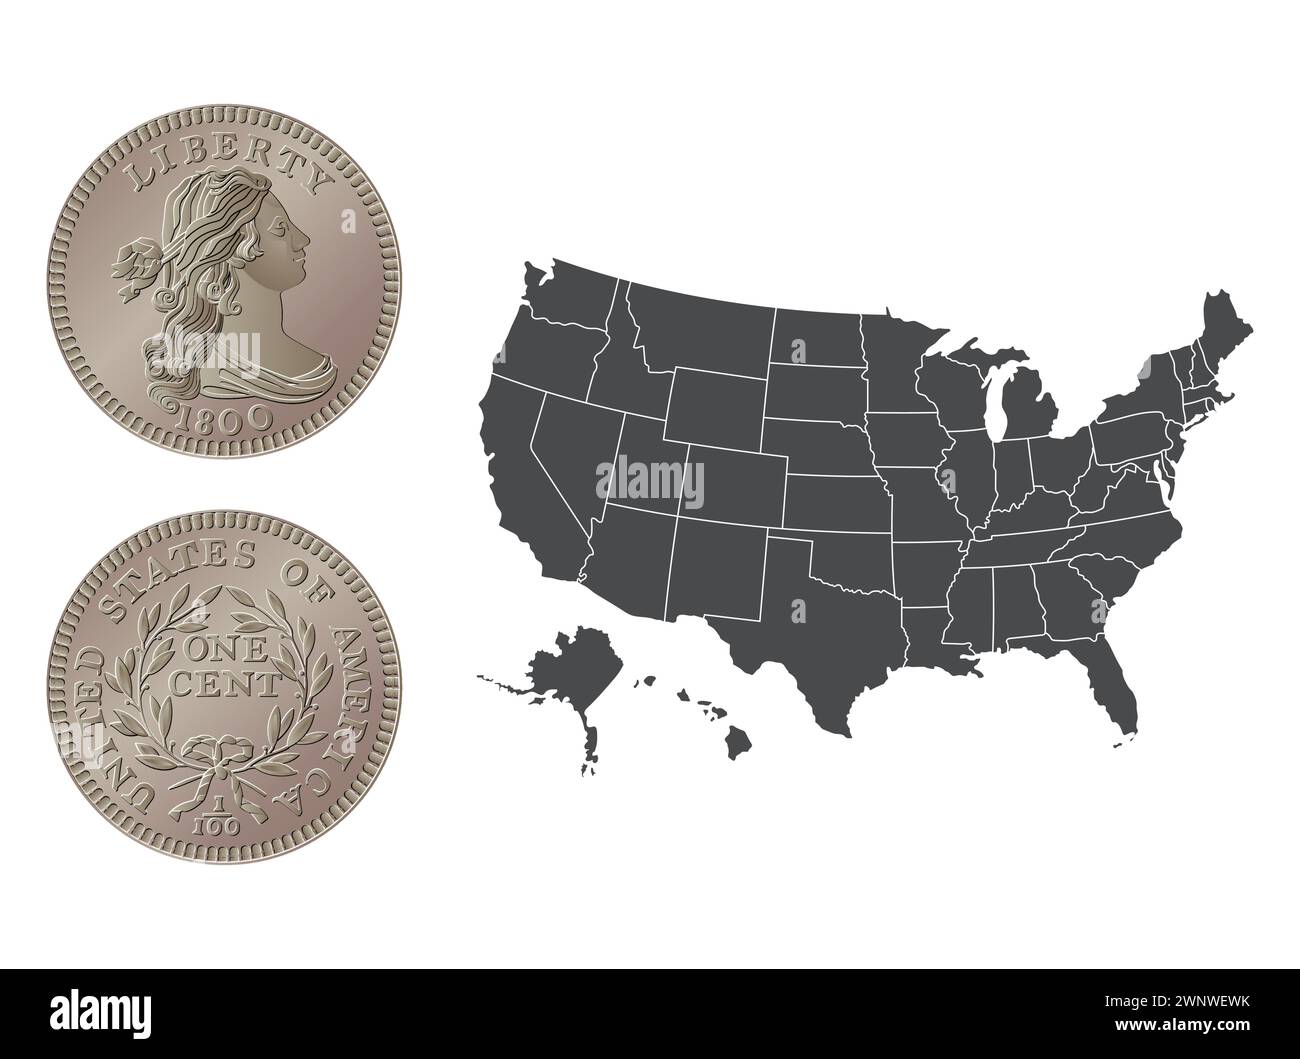 Vecteur argent américain, pièce d'un cent, 1796-1807. Illustration vectorielle isolée sur le fond d'une carte des Etats-Unis. Illustration de Vecteur